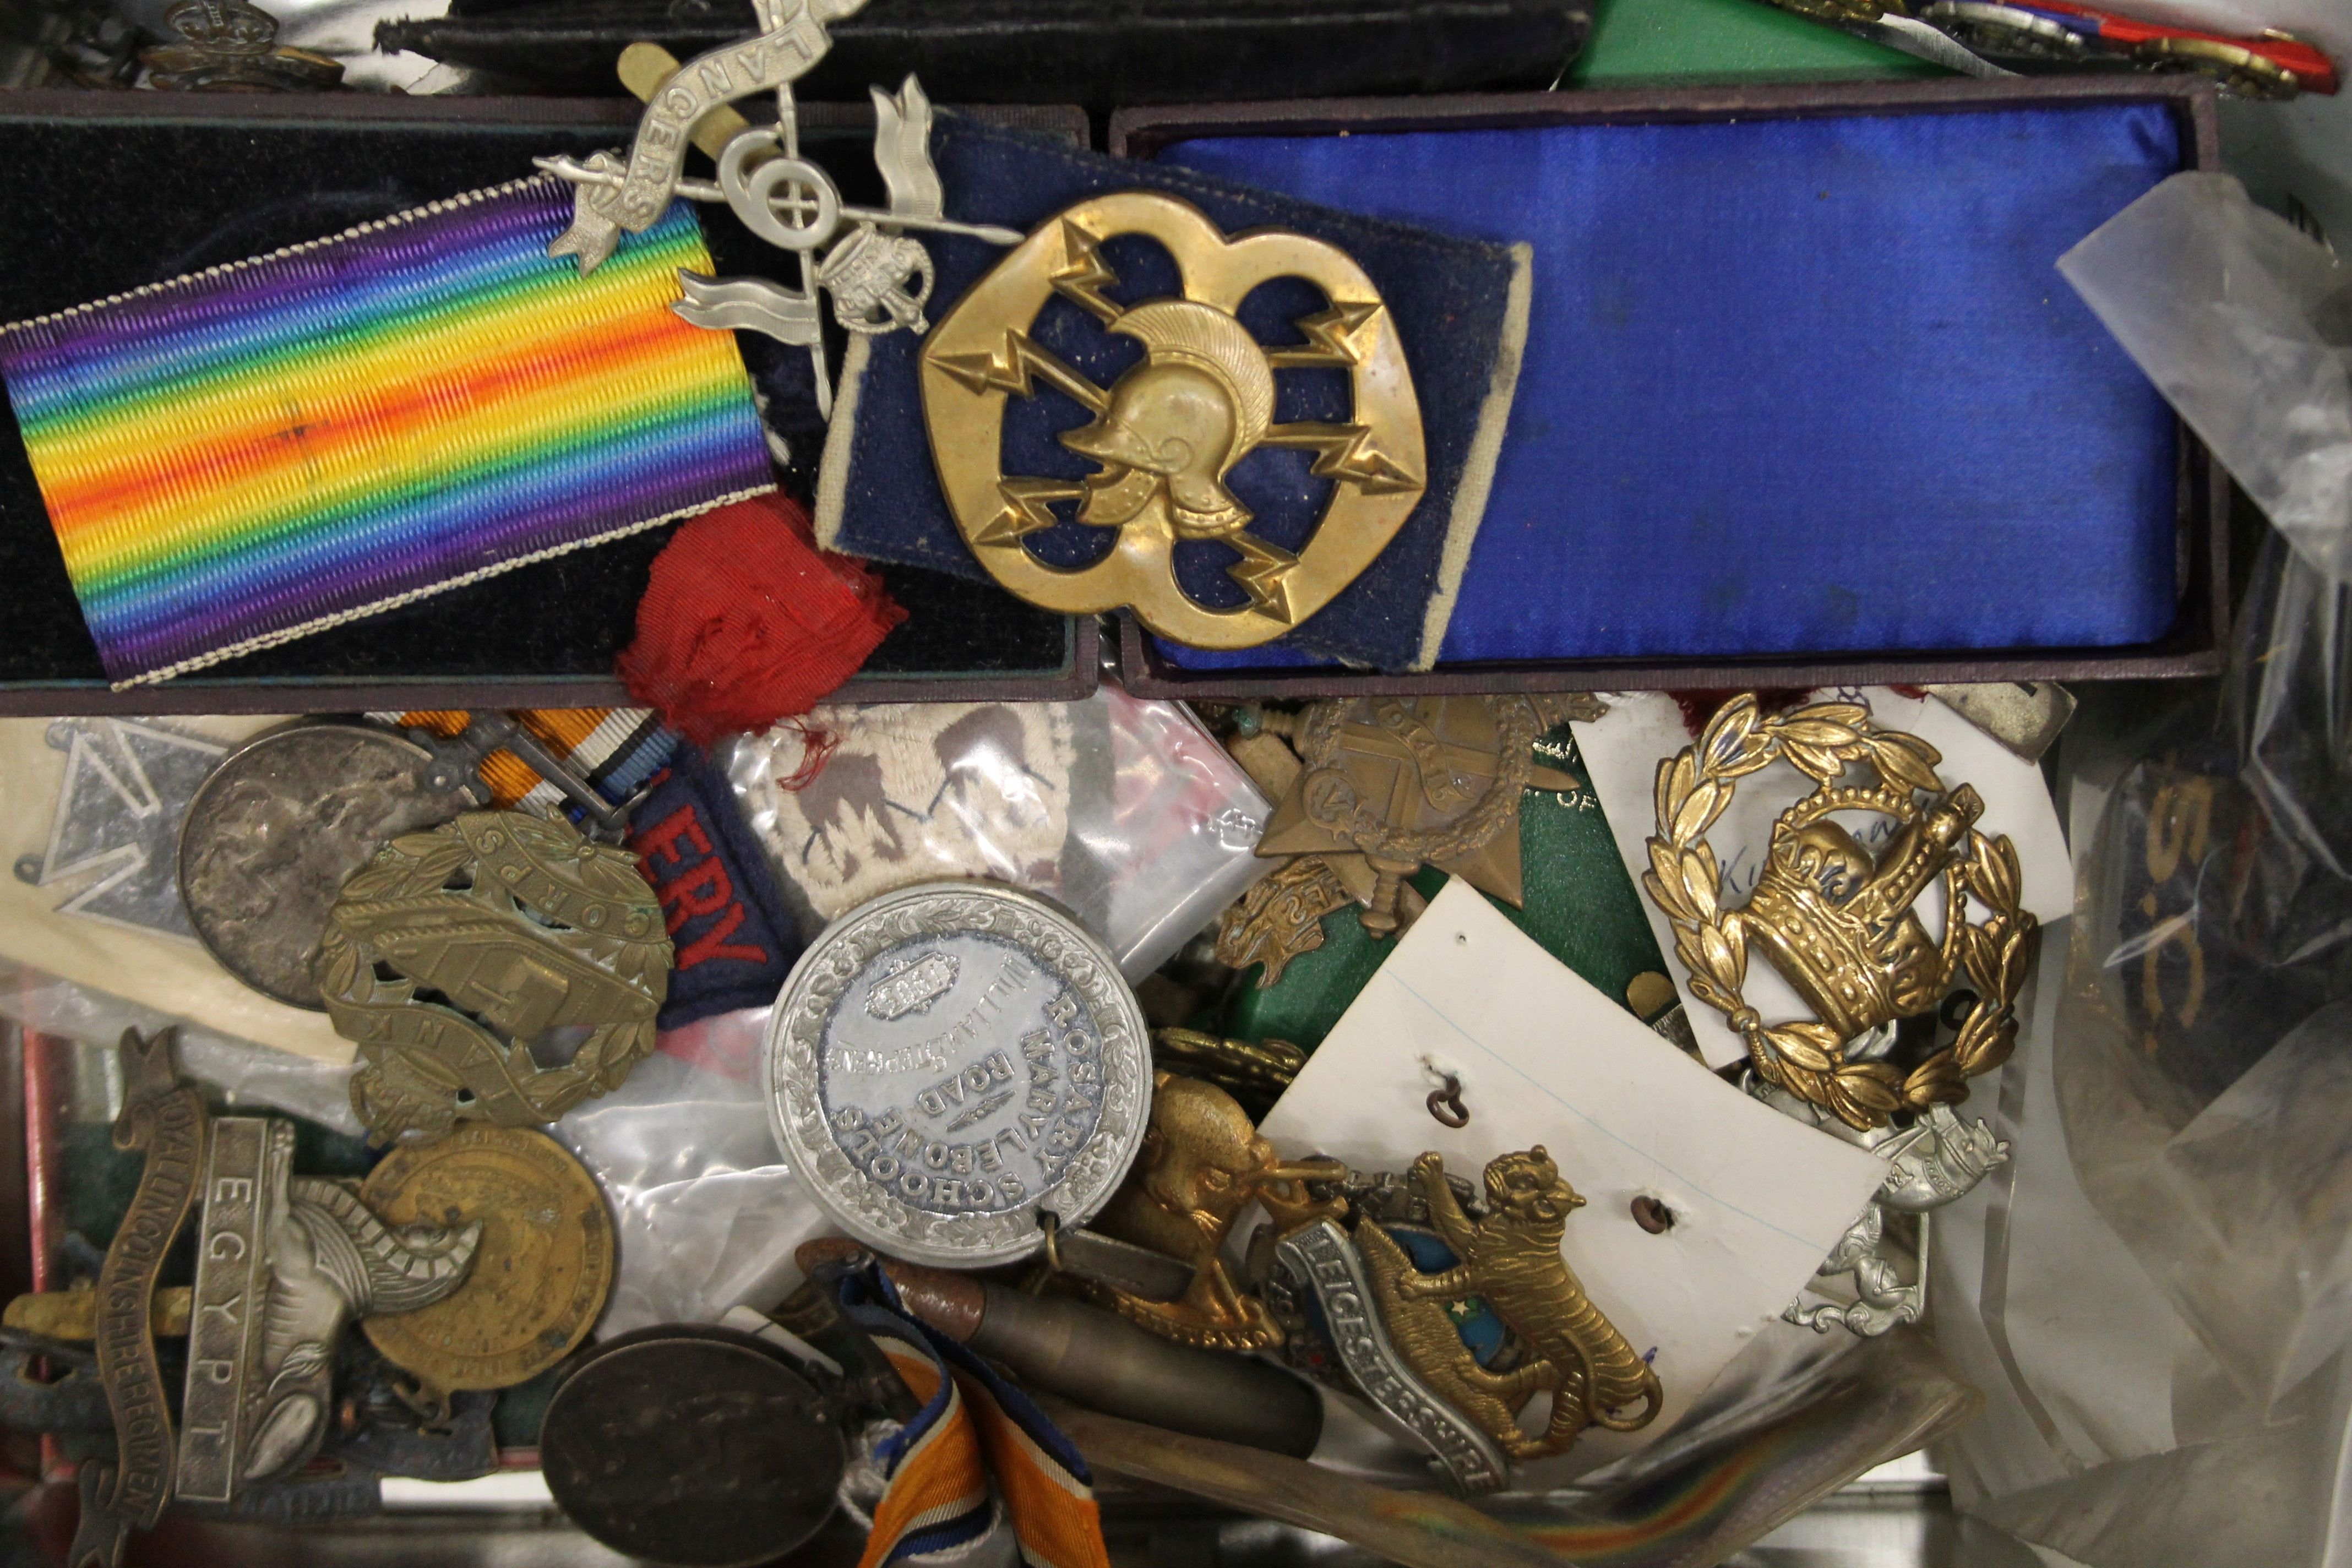 A quantity of various military medals, cap badges, etc.